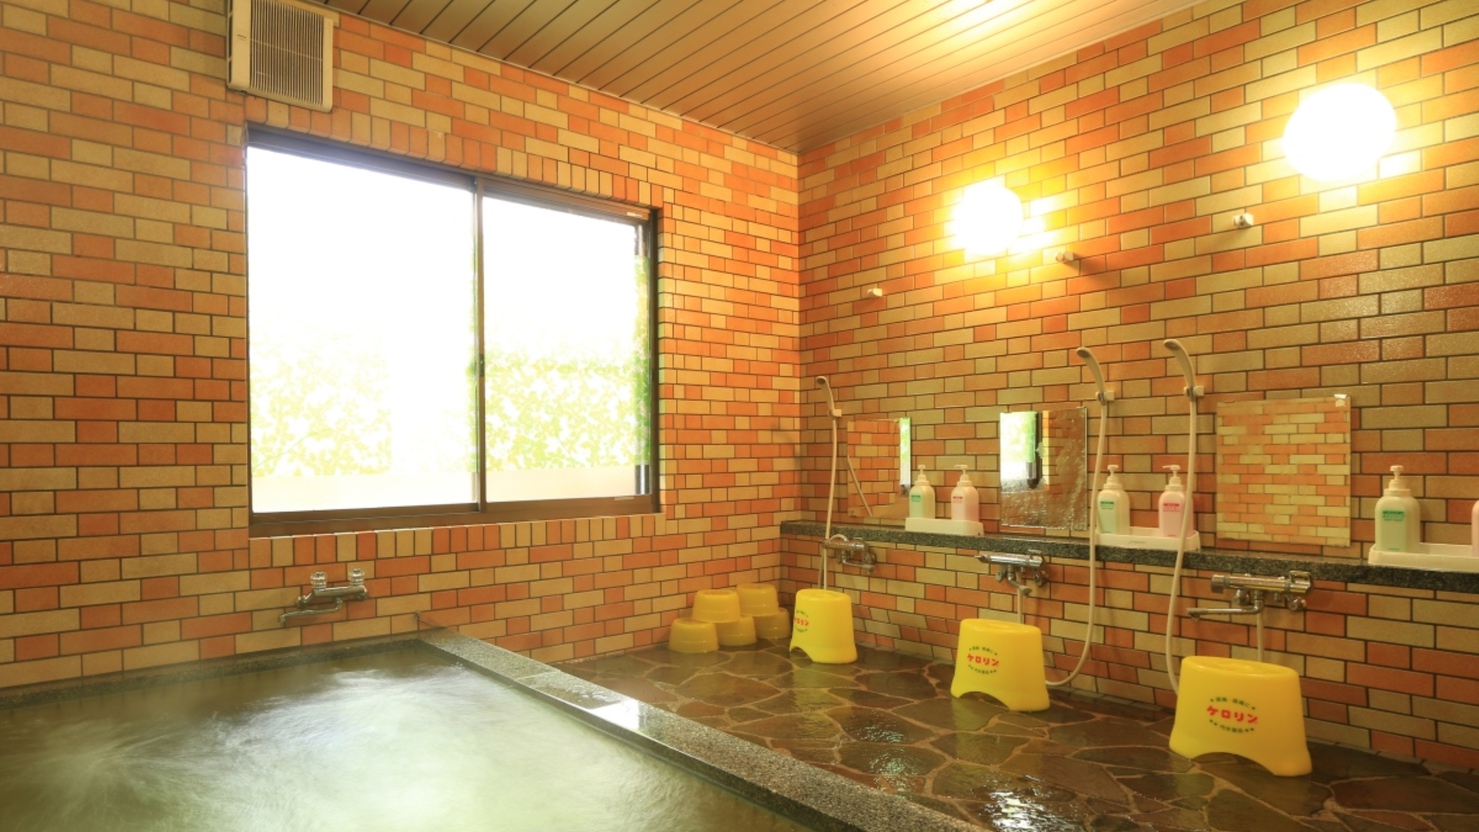 光明石が入った温泉は保温保湿効果があると好評です（16時〜23時まで入浴OK!）